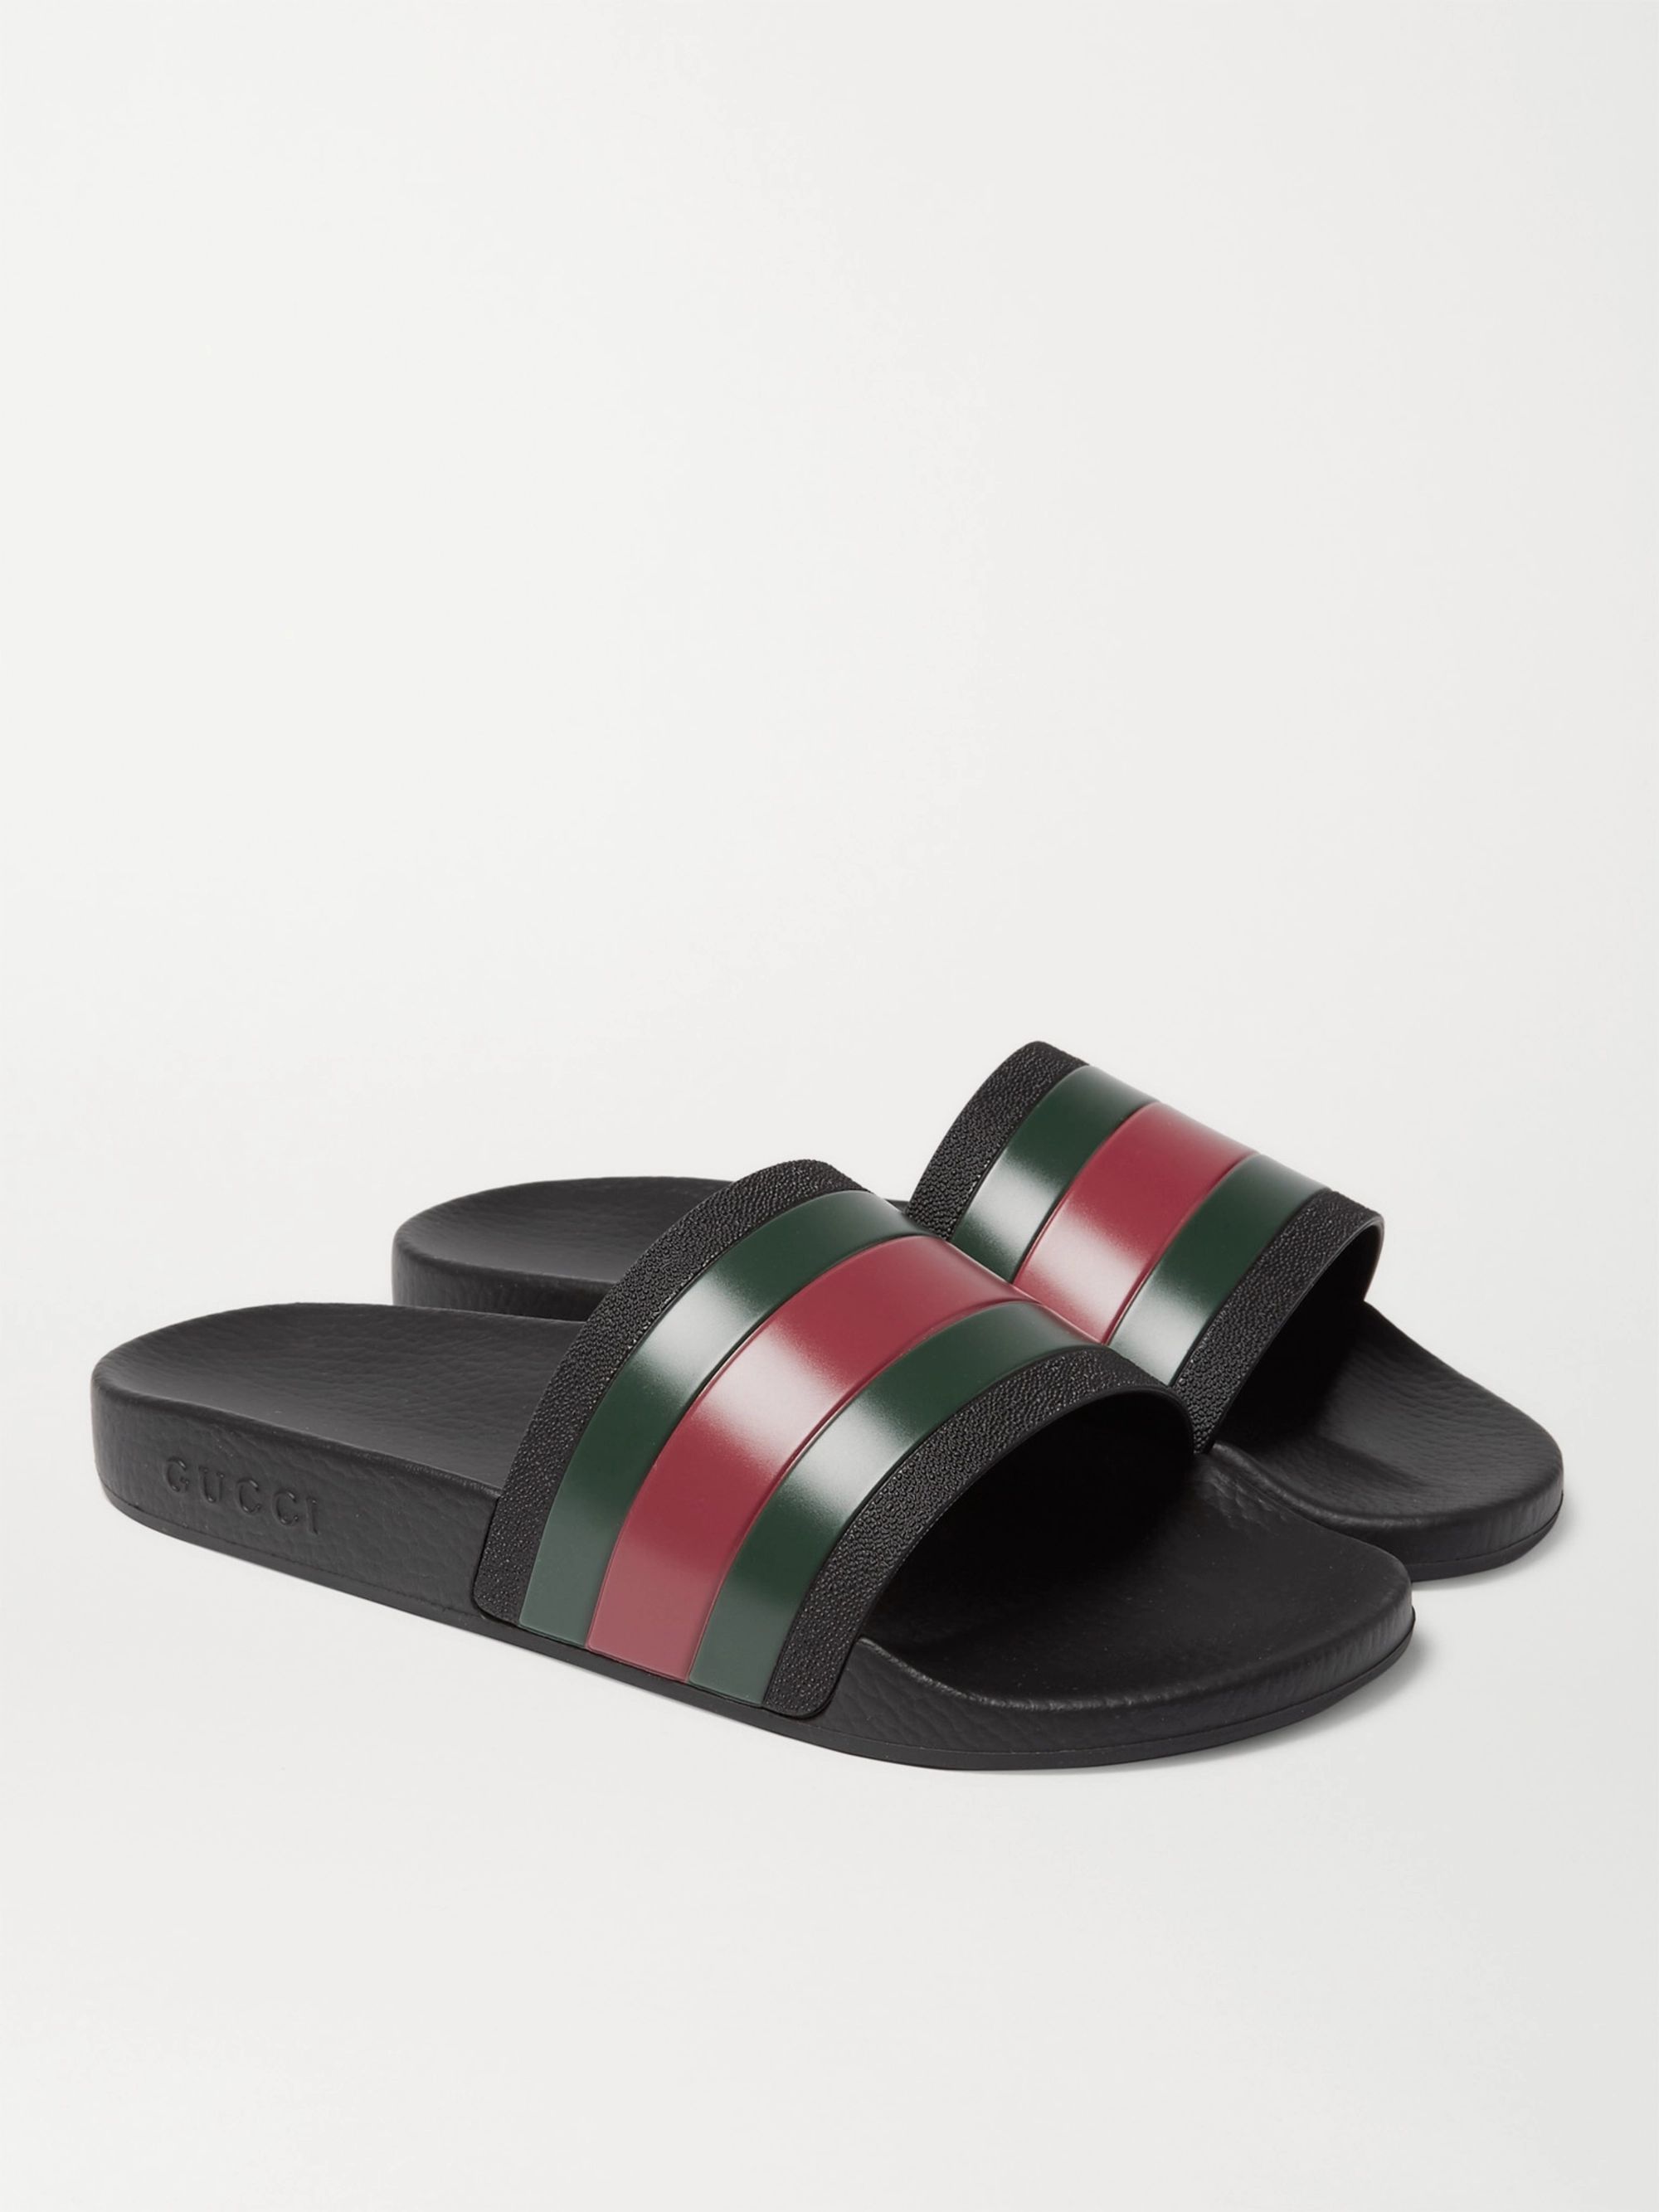 Striped Rubber Slides | Gucci | MR PORTER